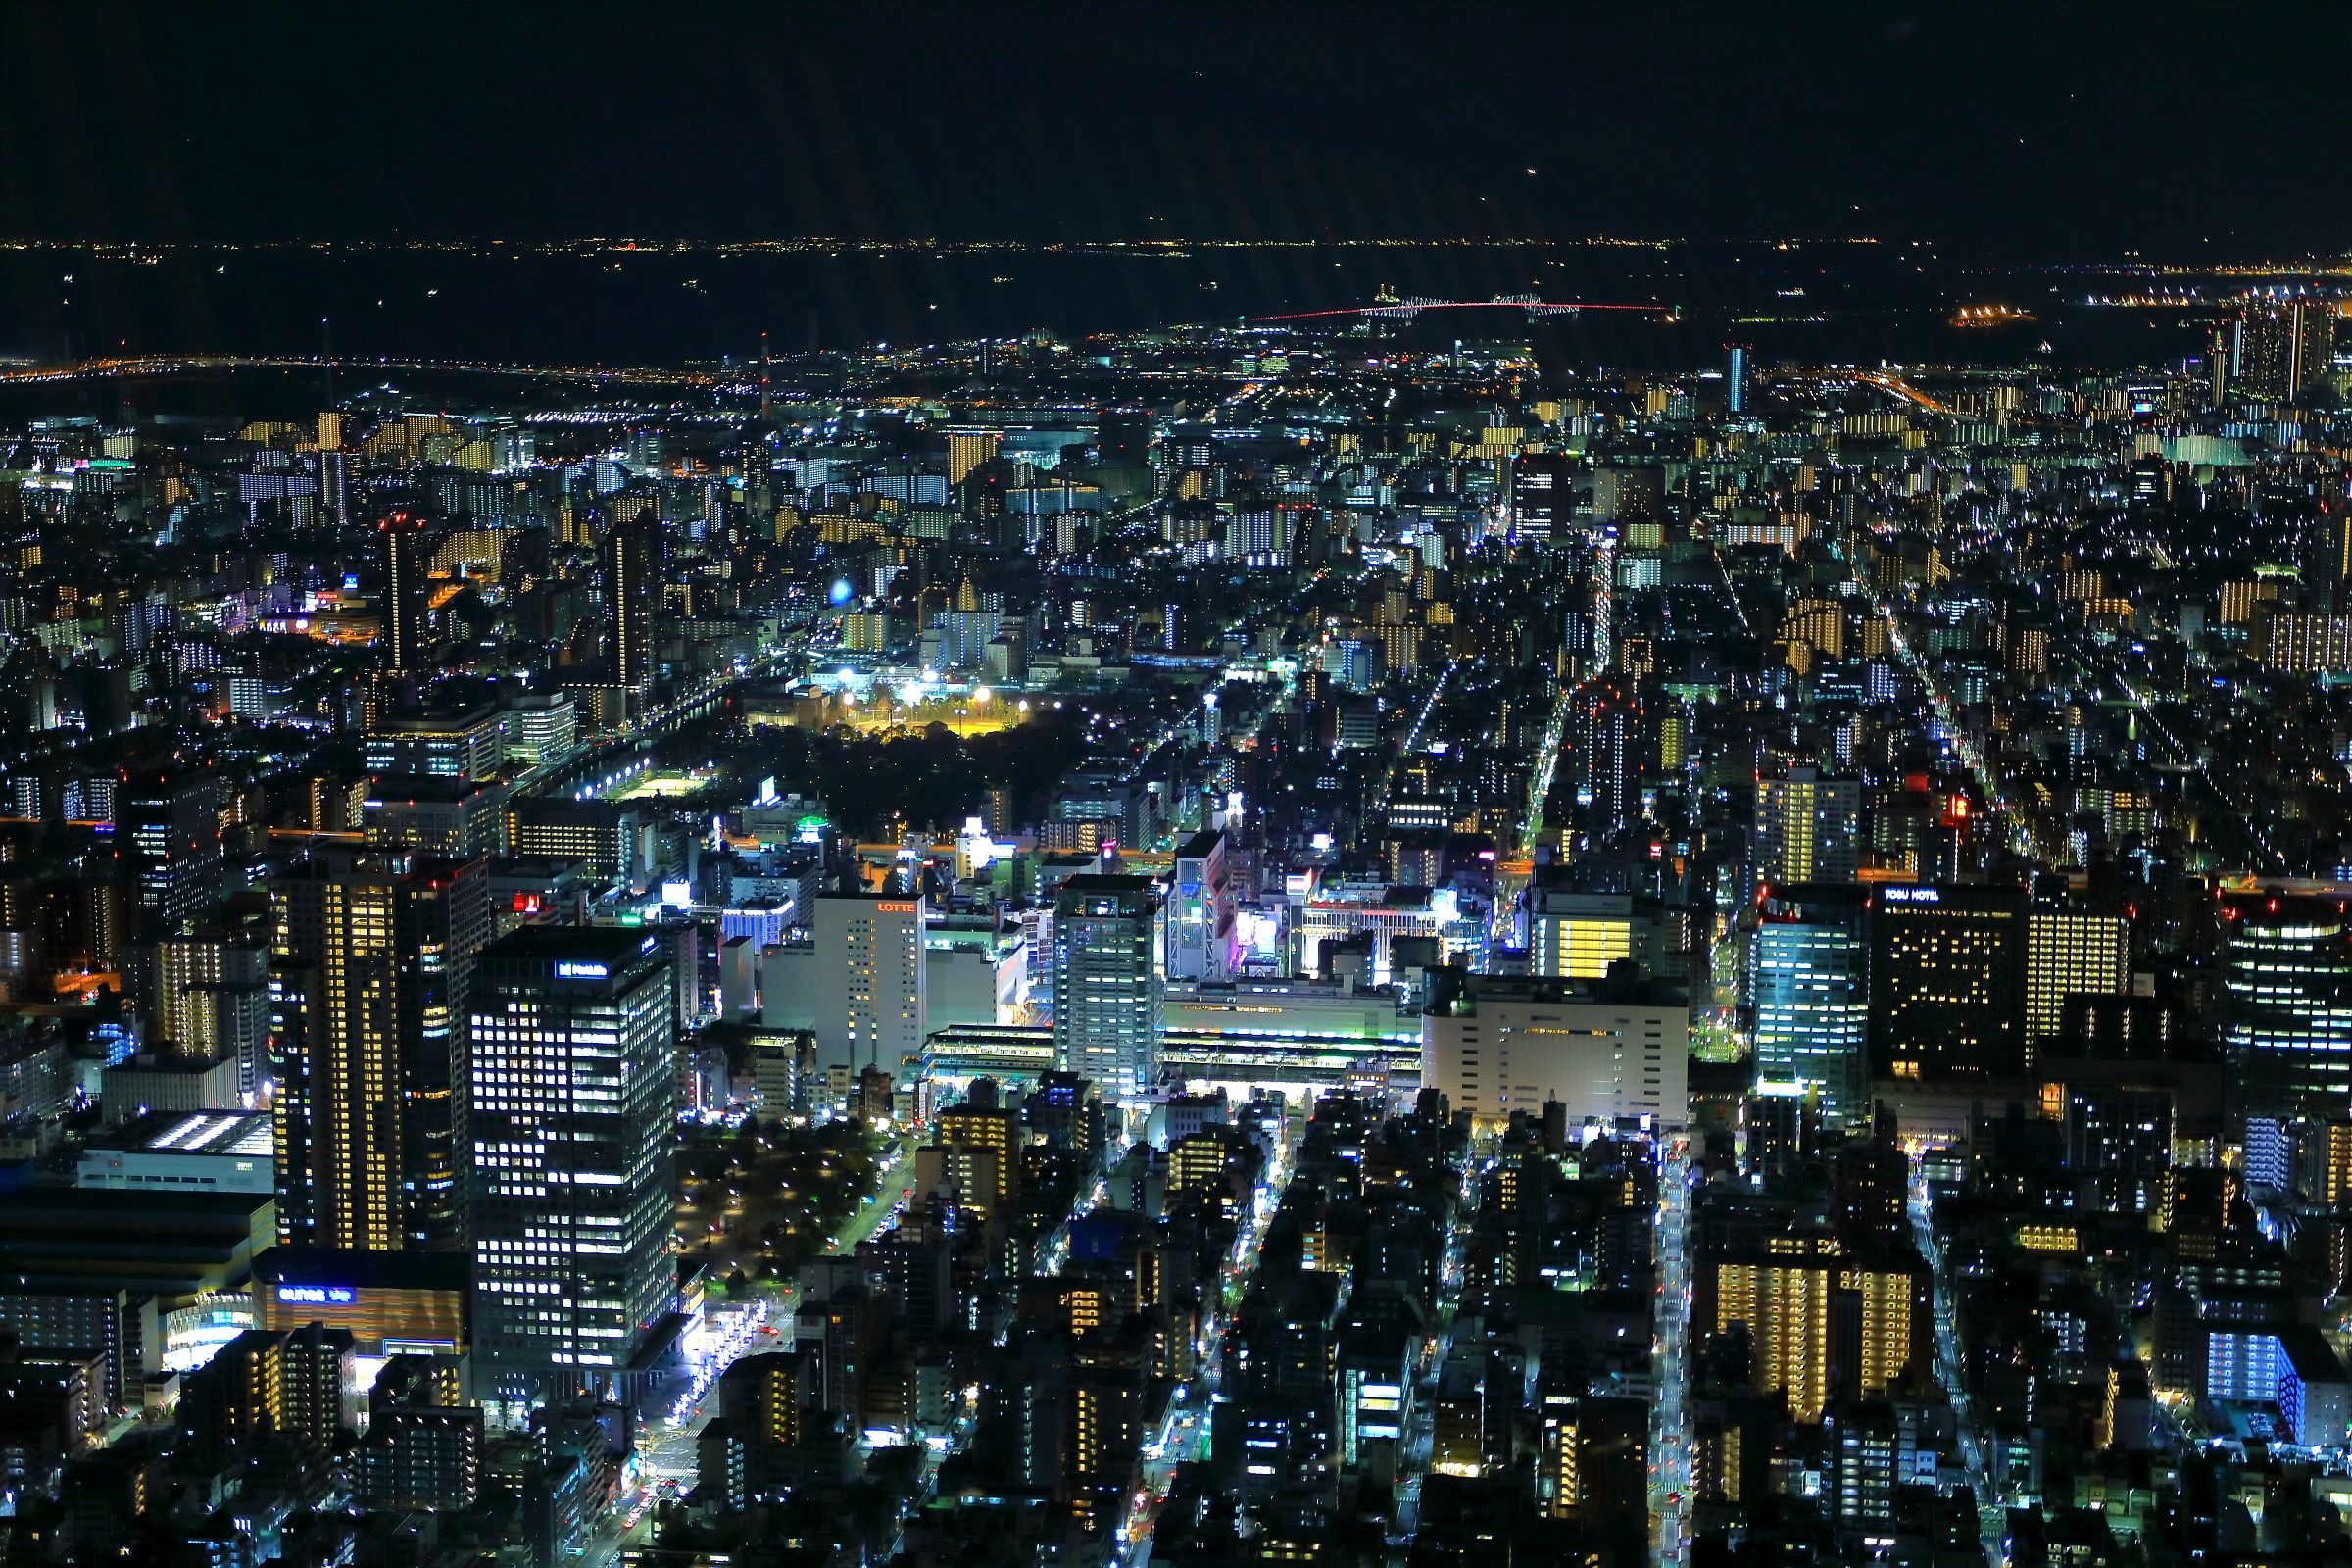 天望回廊から錦糸町方面の夜景 18年12月14日 東京スカイツリー定点観測所